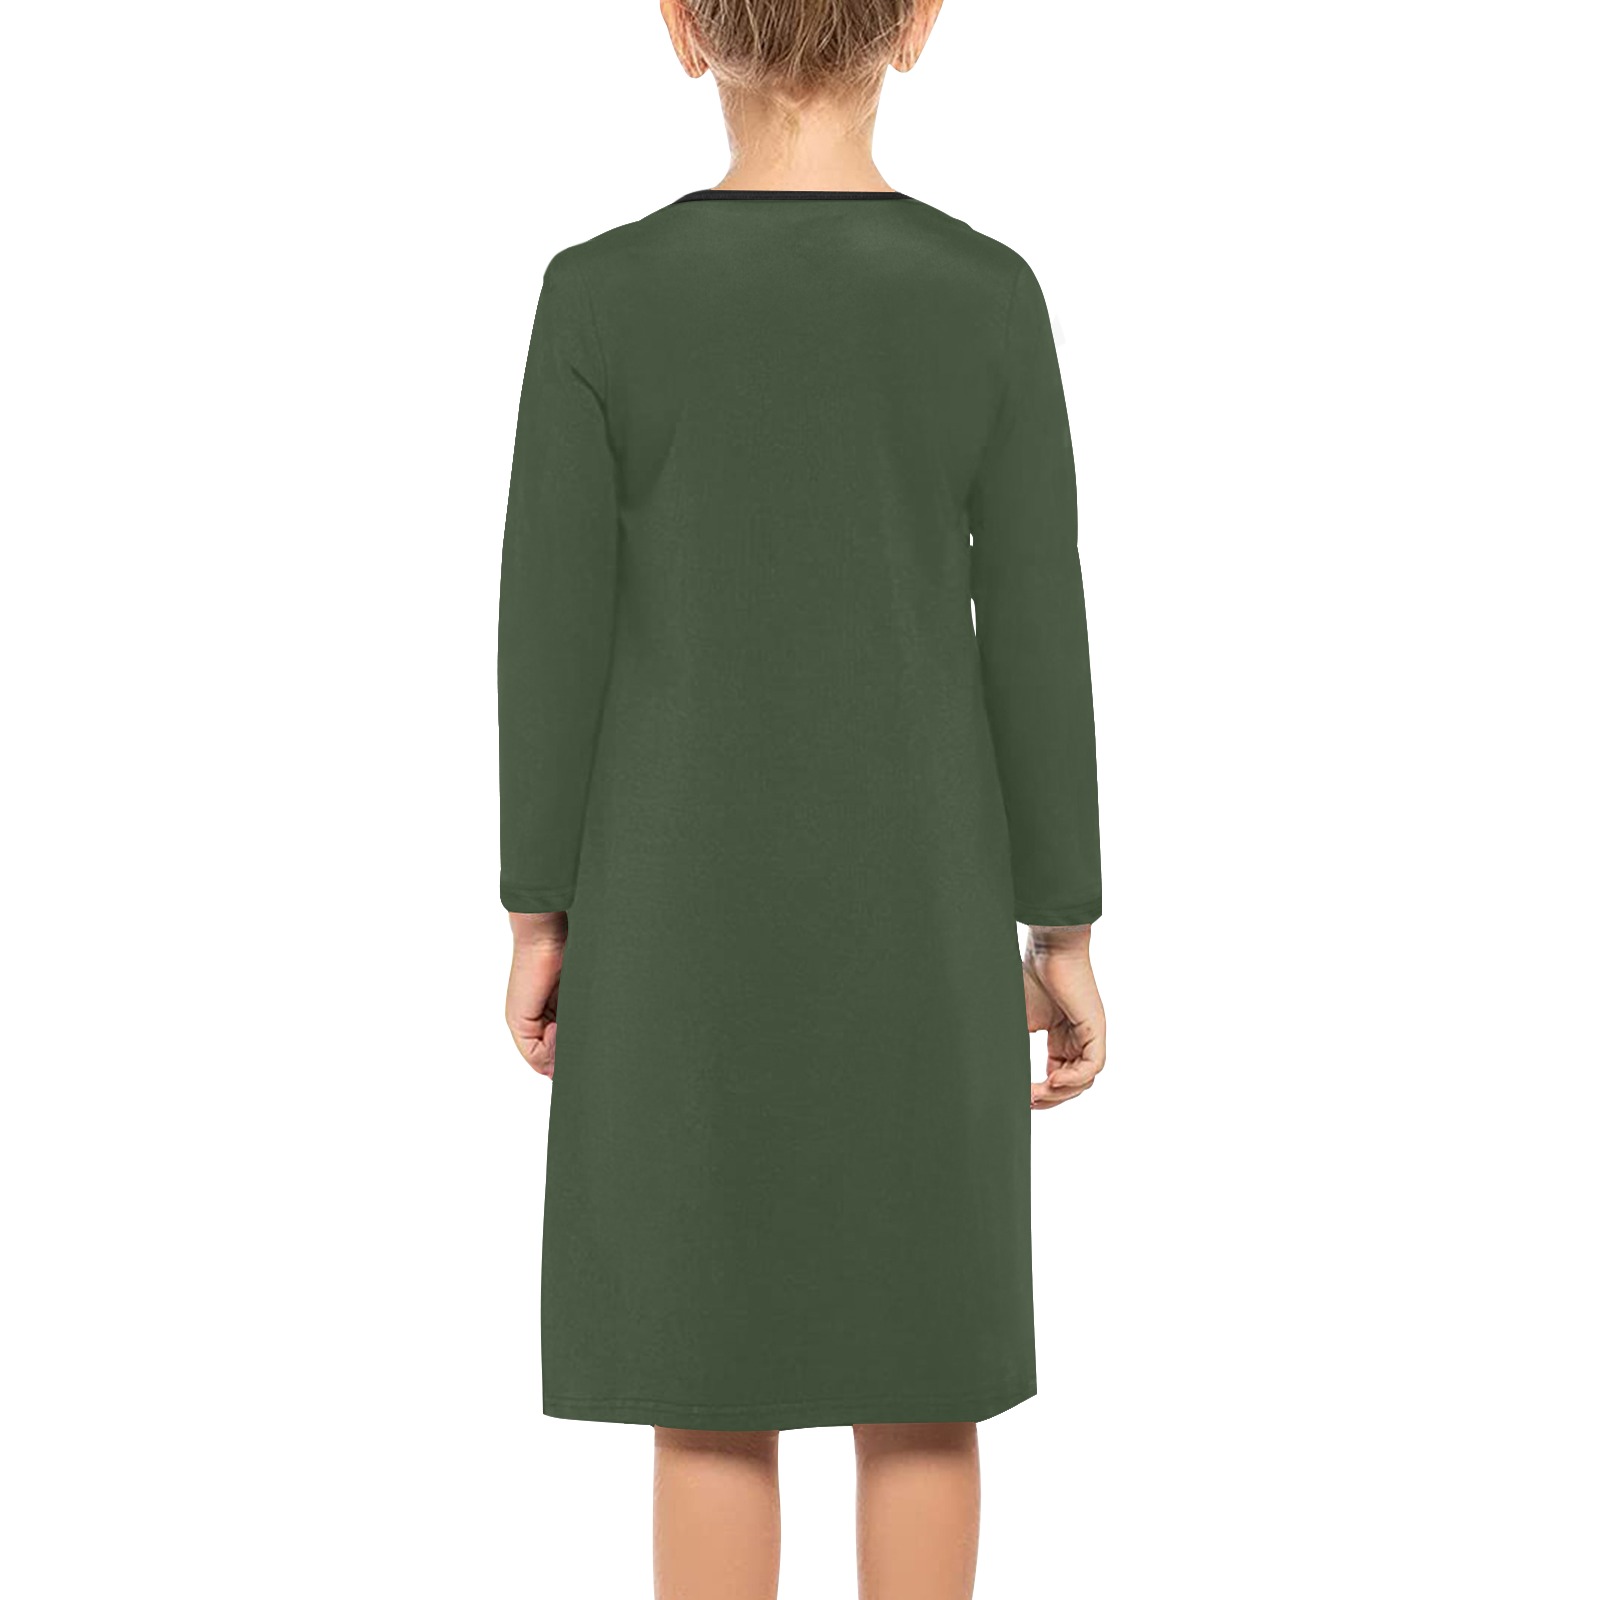 Foxy Roxy Forest Green Girls' Long Sleeve Dress (Model D59)